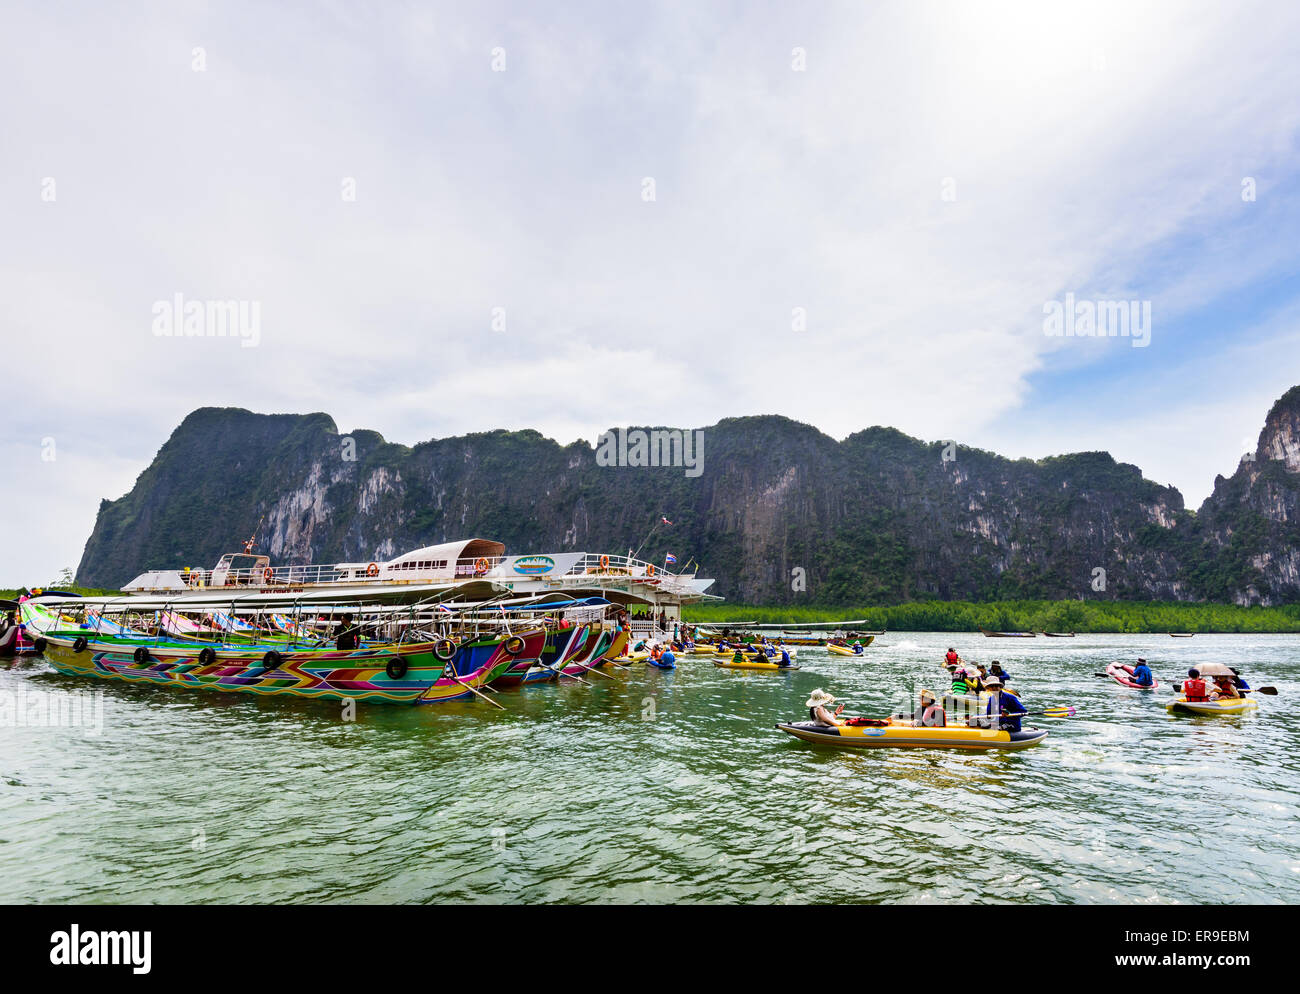 PHANG NGA, THAILAND - 27. April 2015: Touristen freuen sich über das Kanufahren in der Nähe von Insel und große Schiffe auf dem Meer Oberfläche mit einer Stockfoto